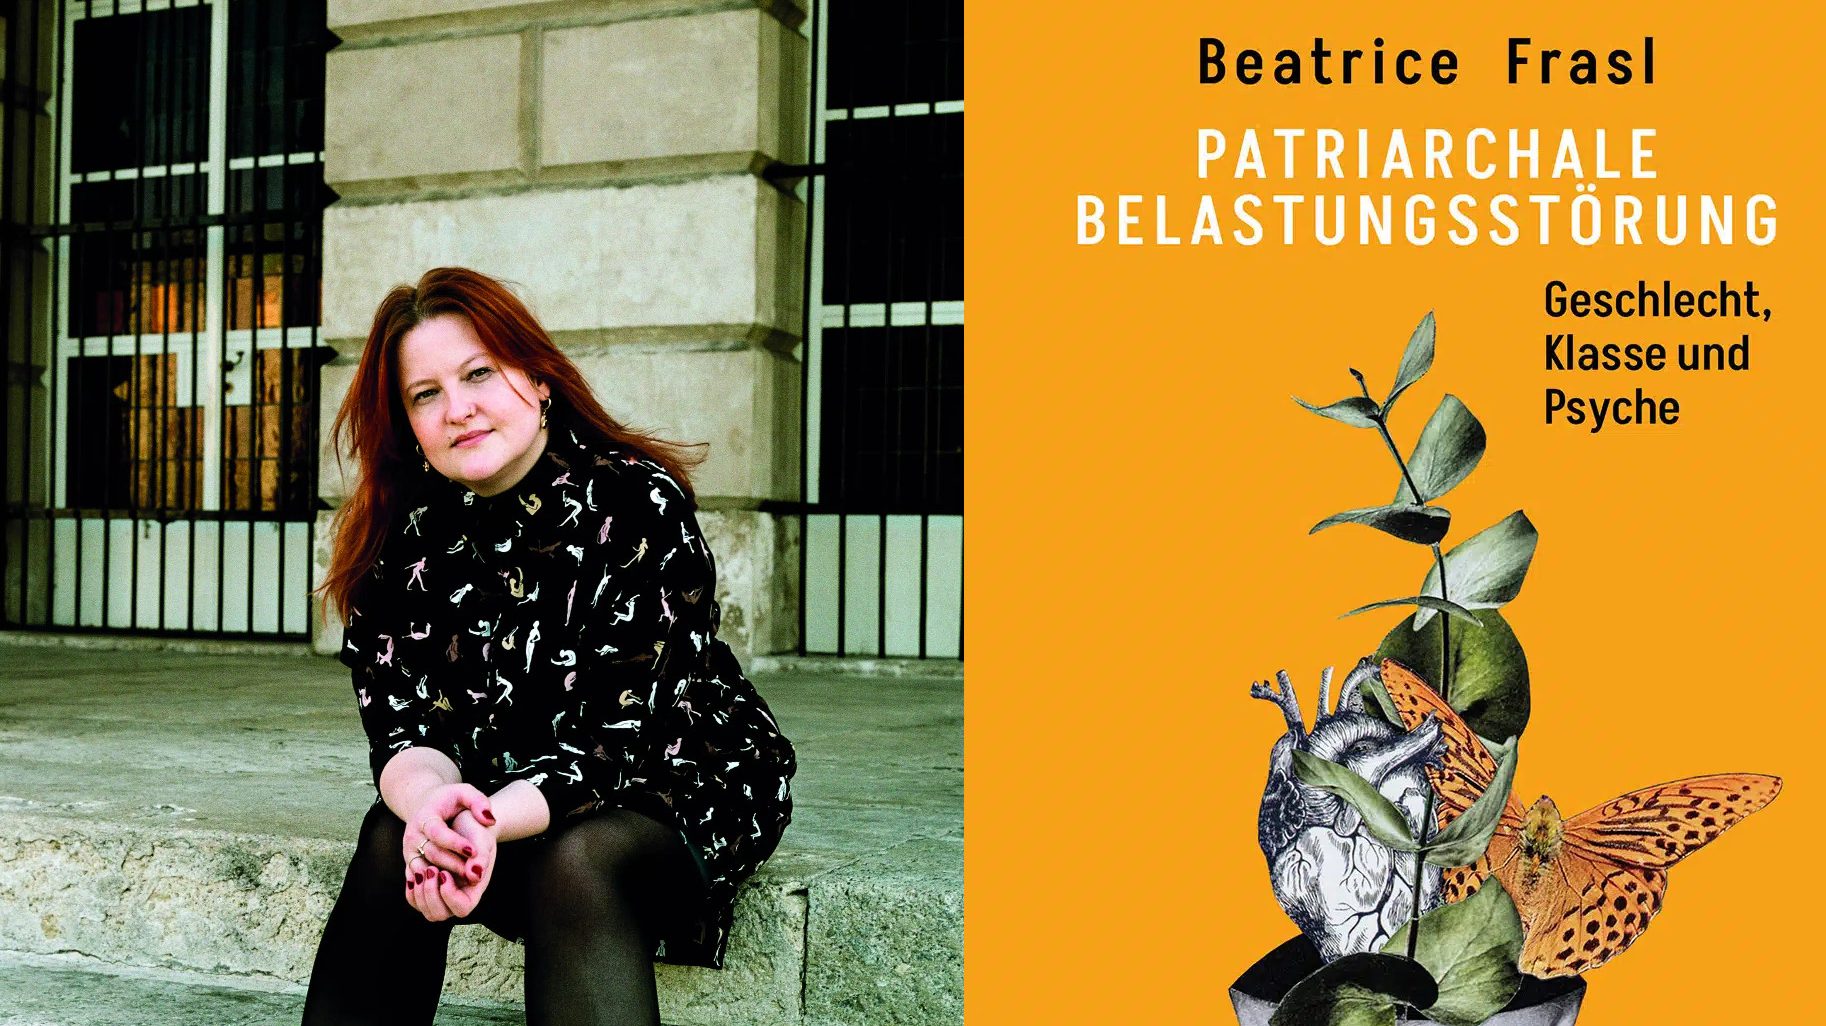 Links die Autorin Beatrice Frasl und rechts ihr Buch "Patriachale Belastungsstörung"